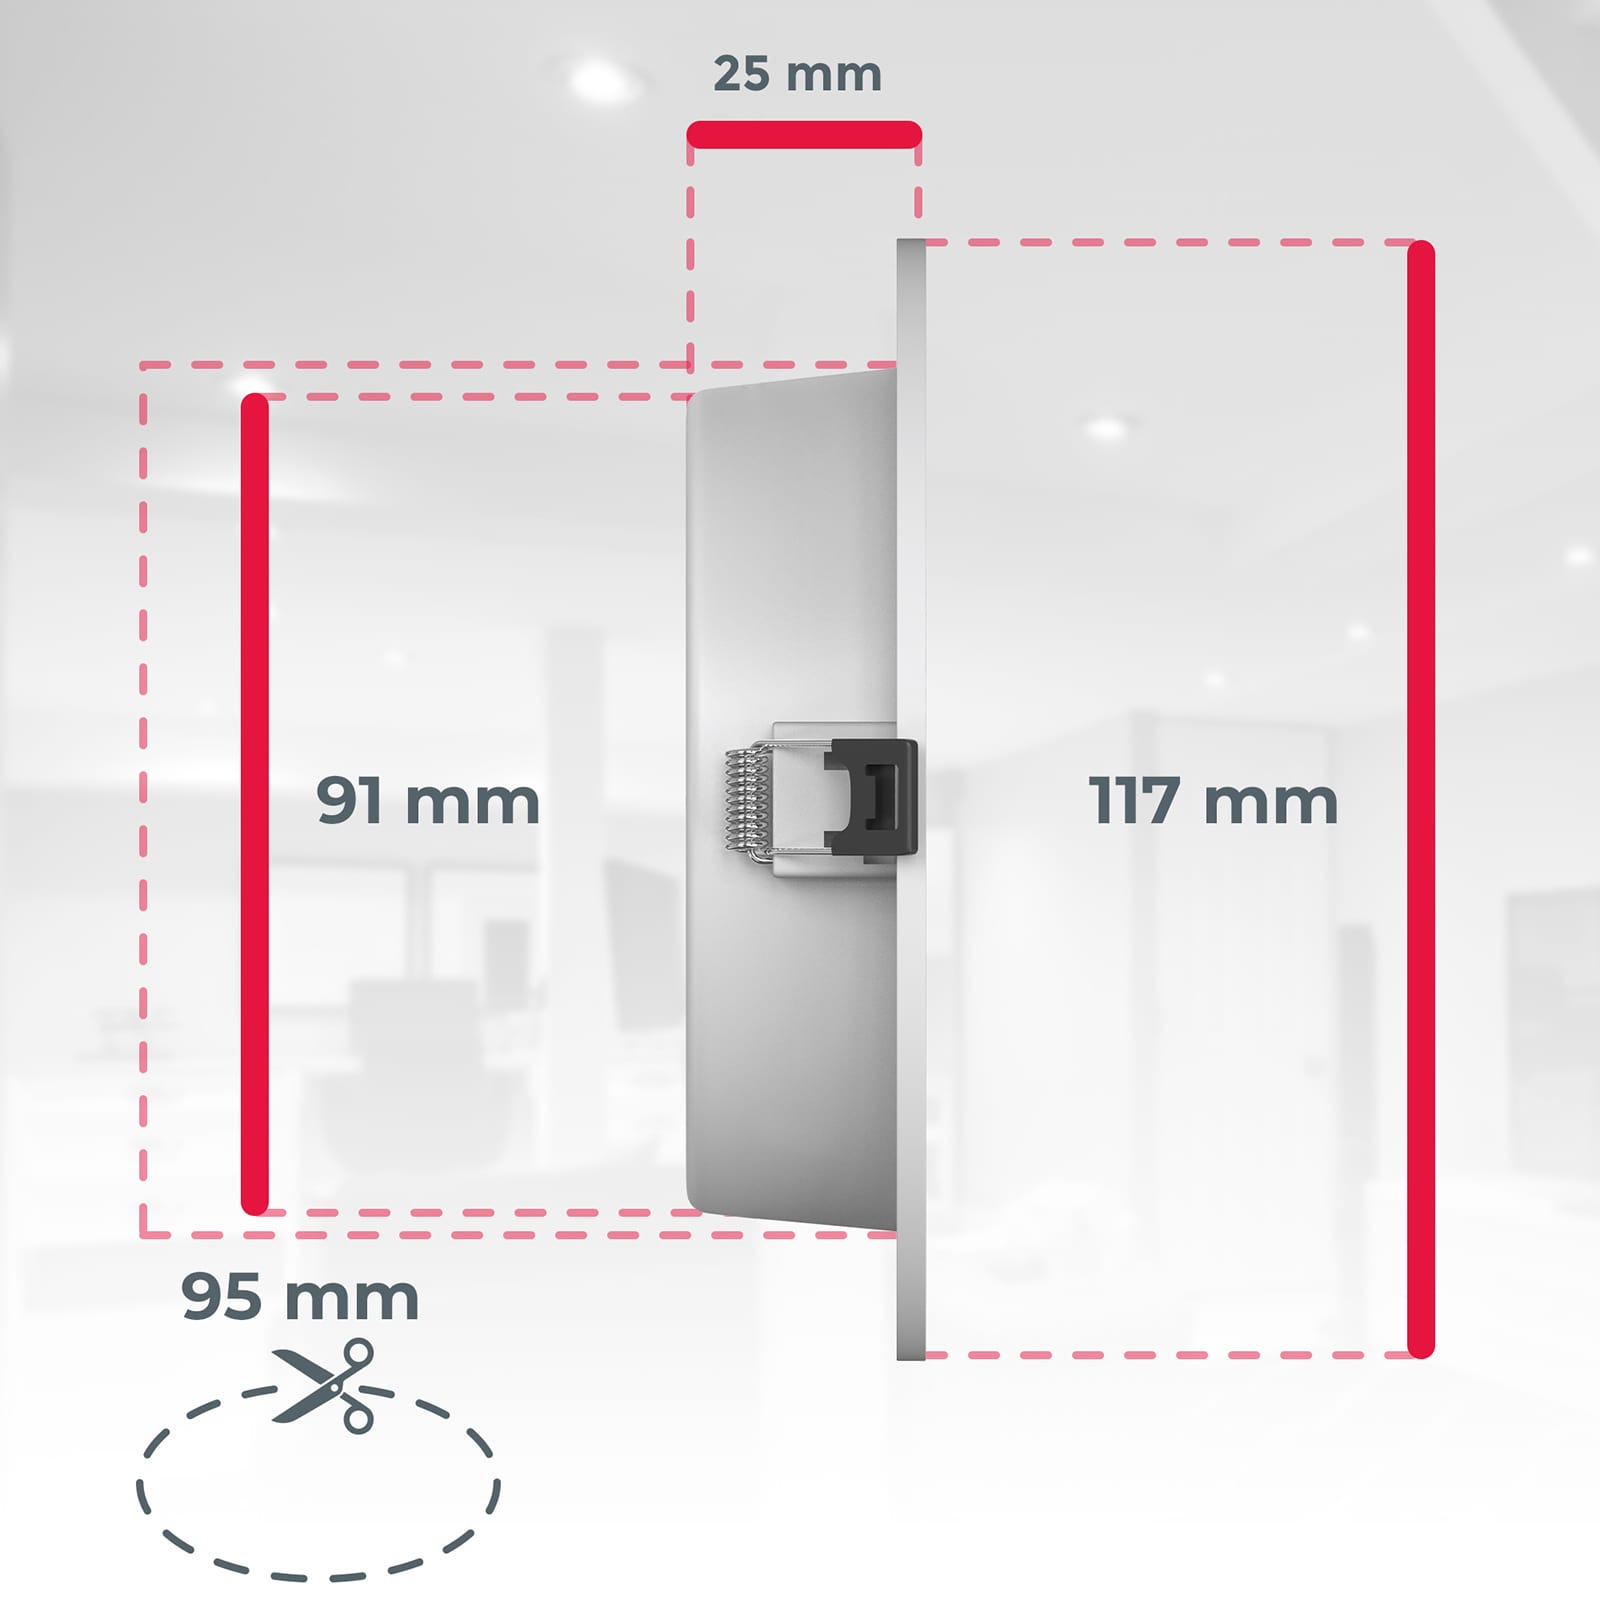 LED Einbaustrahler Bad 117mm - 6er SET - Einbauleuchten IP44 spritzwassergeschützt ultra-flach 25mm 230V 6W 510lm warmweißes Licht Badezimmer Küche | Weiß - 7